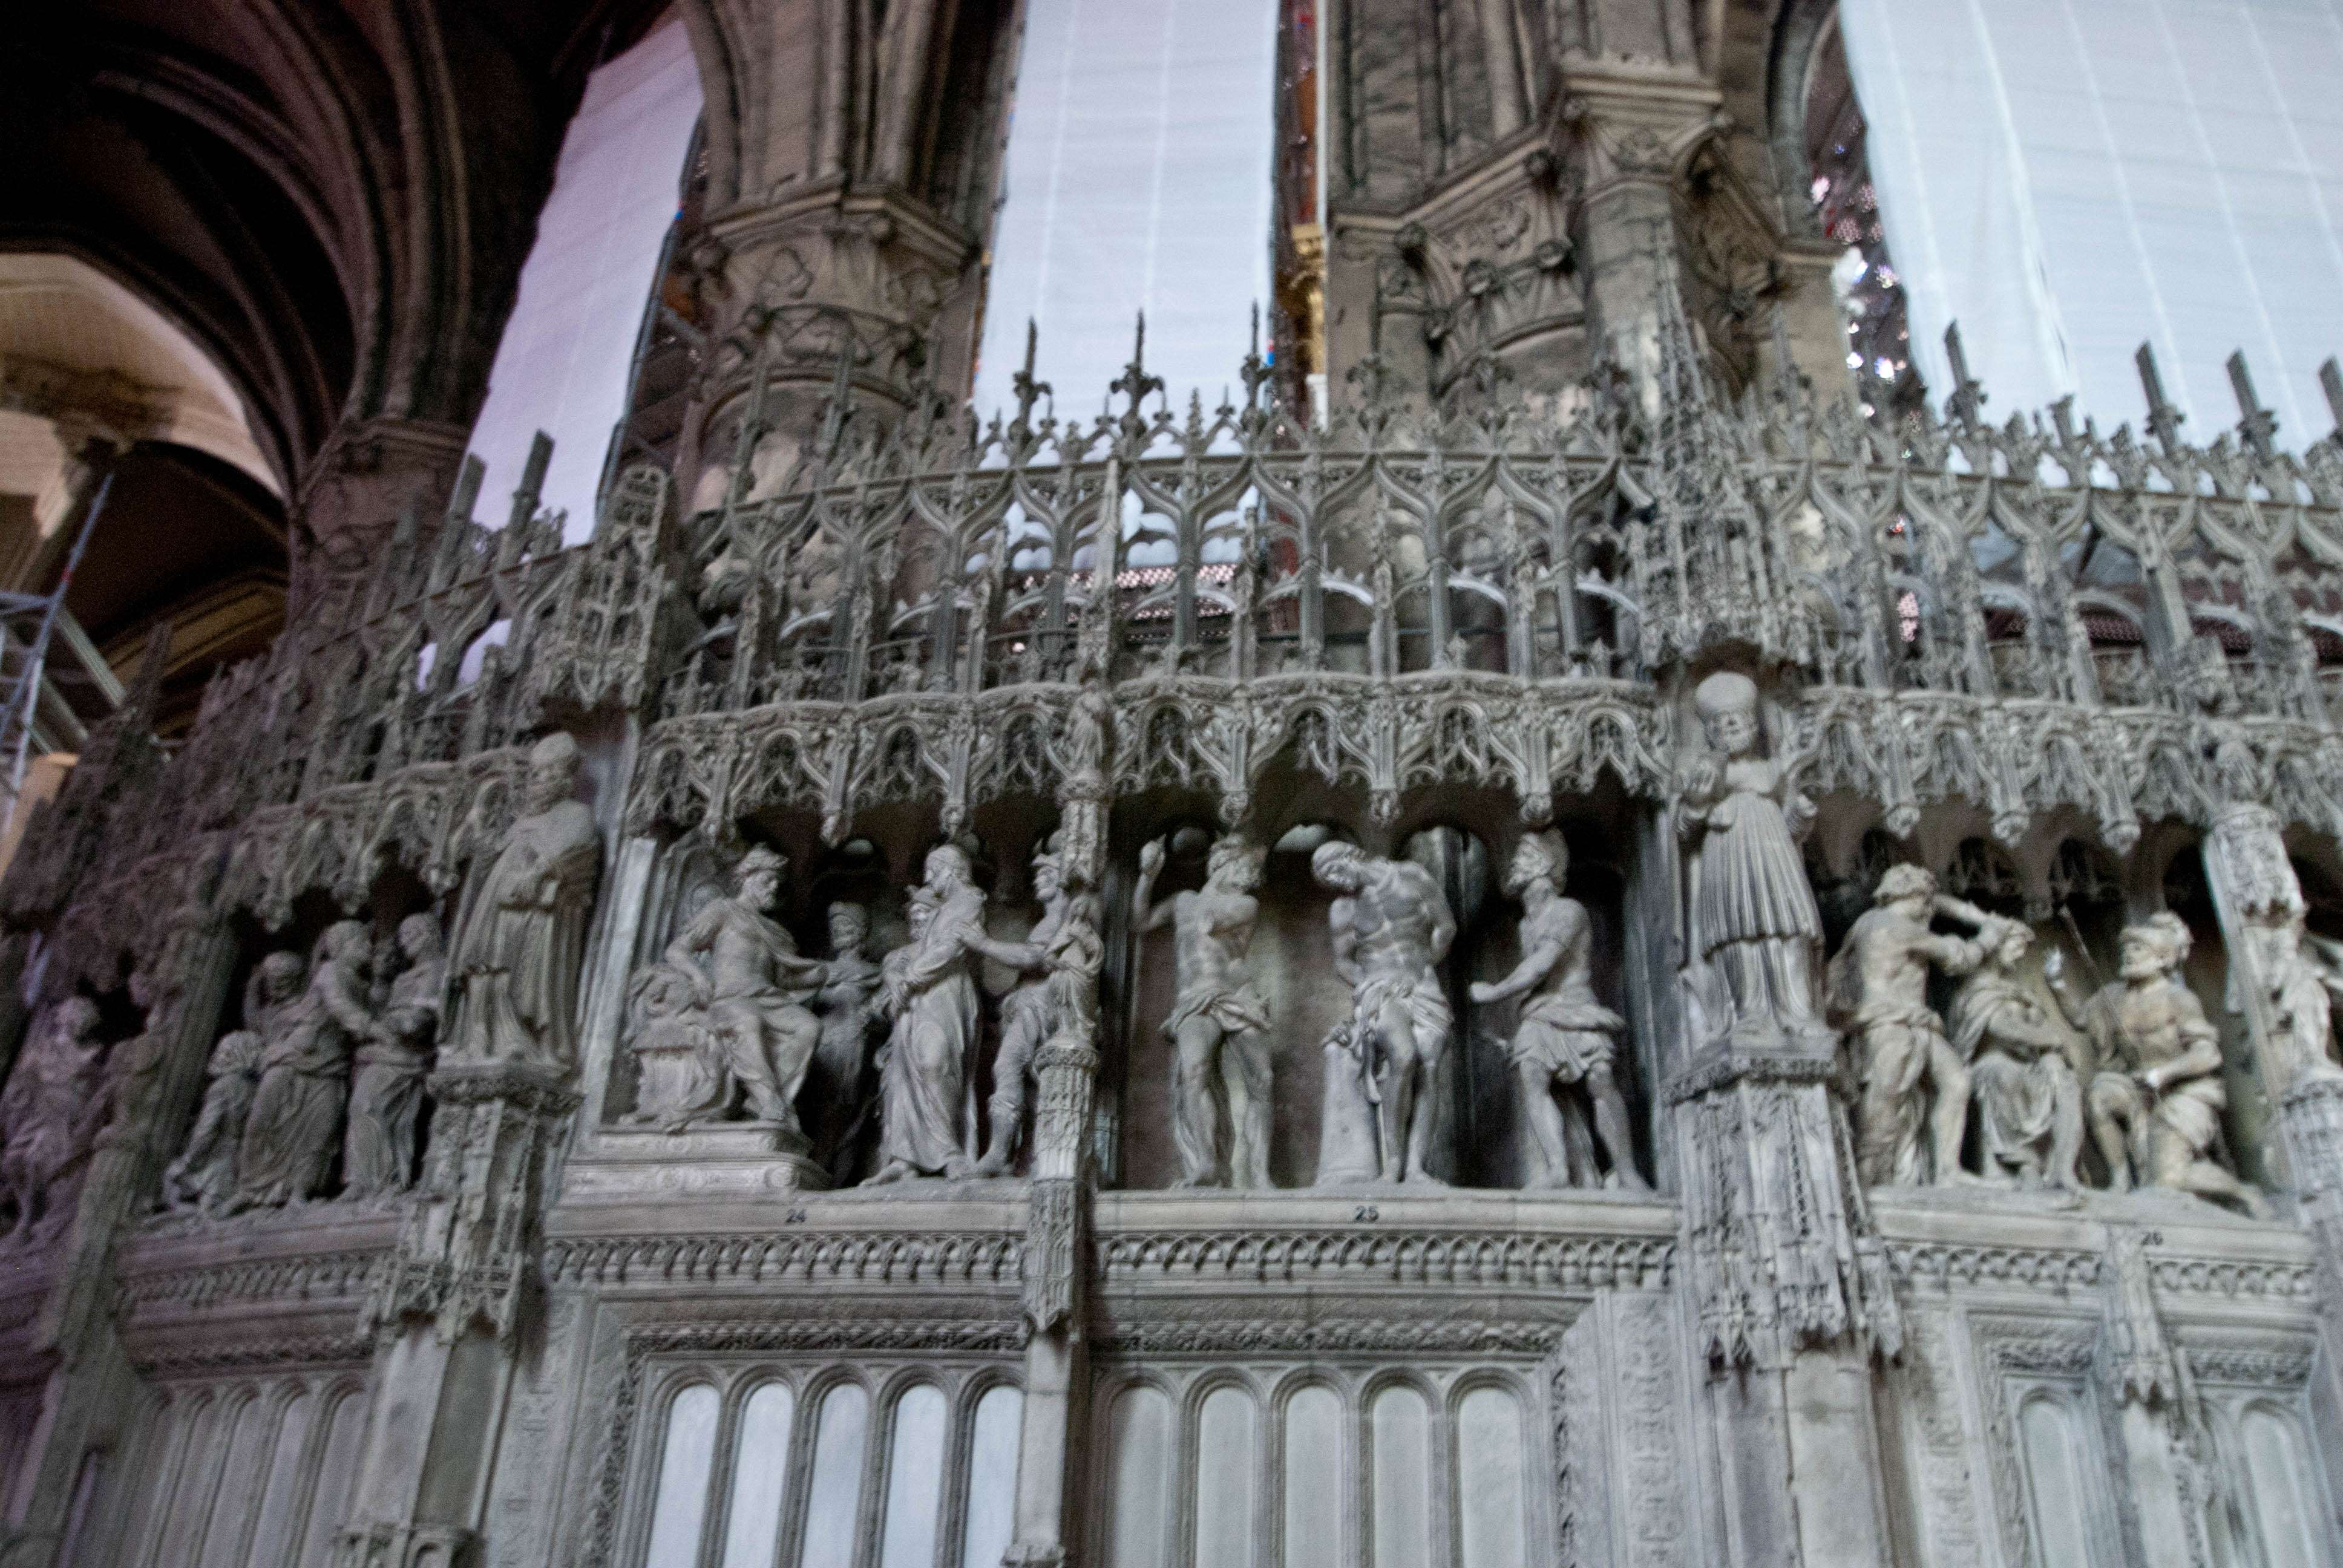 Los pórticos y la escultura en la catedral de Chartres - Chartres: Arte, espiritualidad y esoterismo. (8)